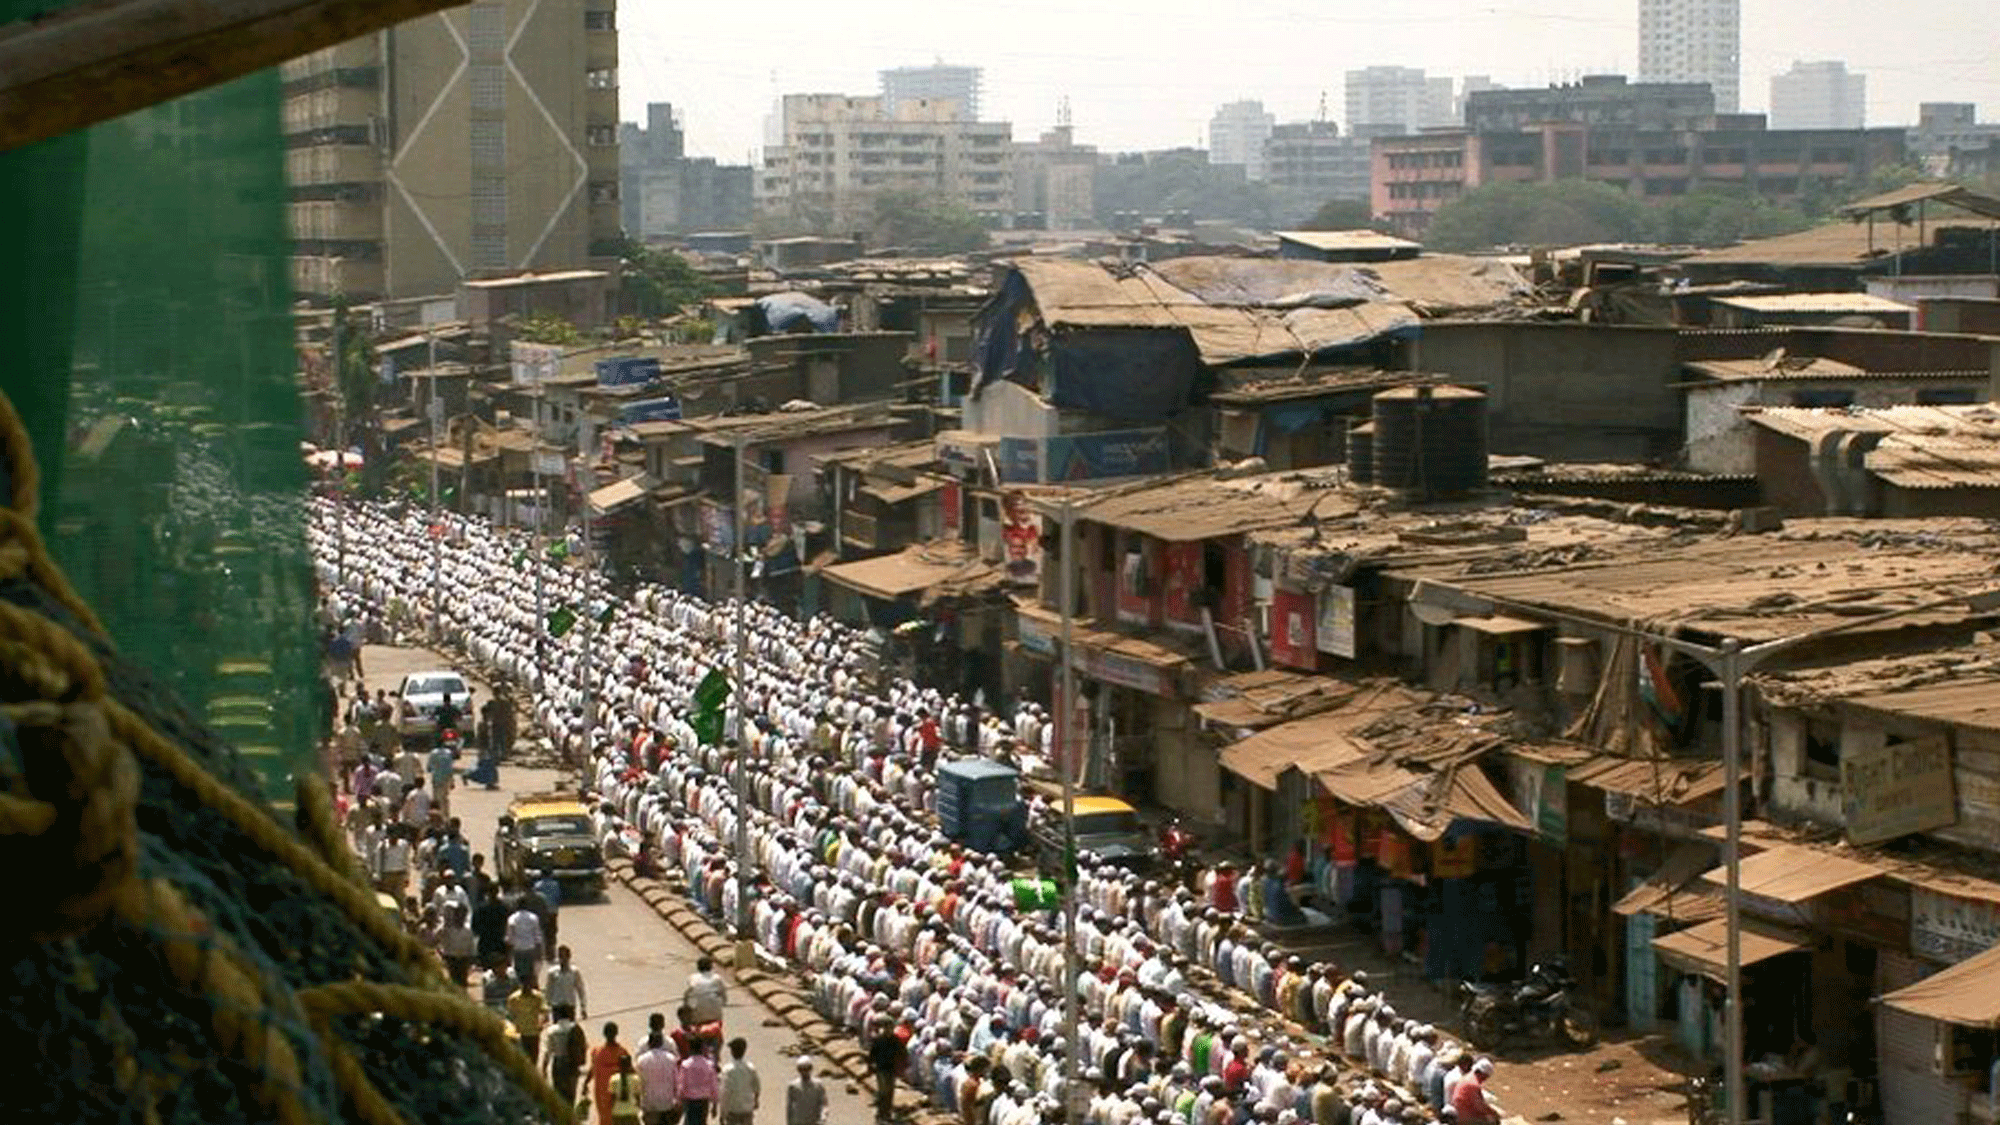 The famous Dharavi slum of Mumbai. (Photo: Facebook/Dharavi slum for sale)